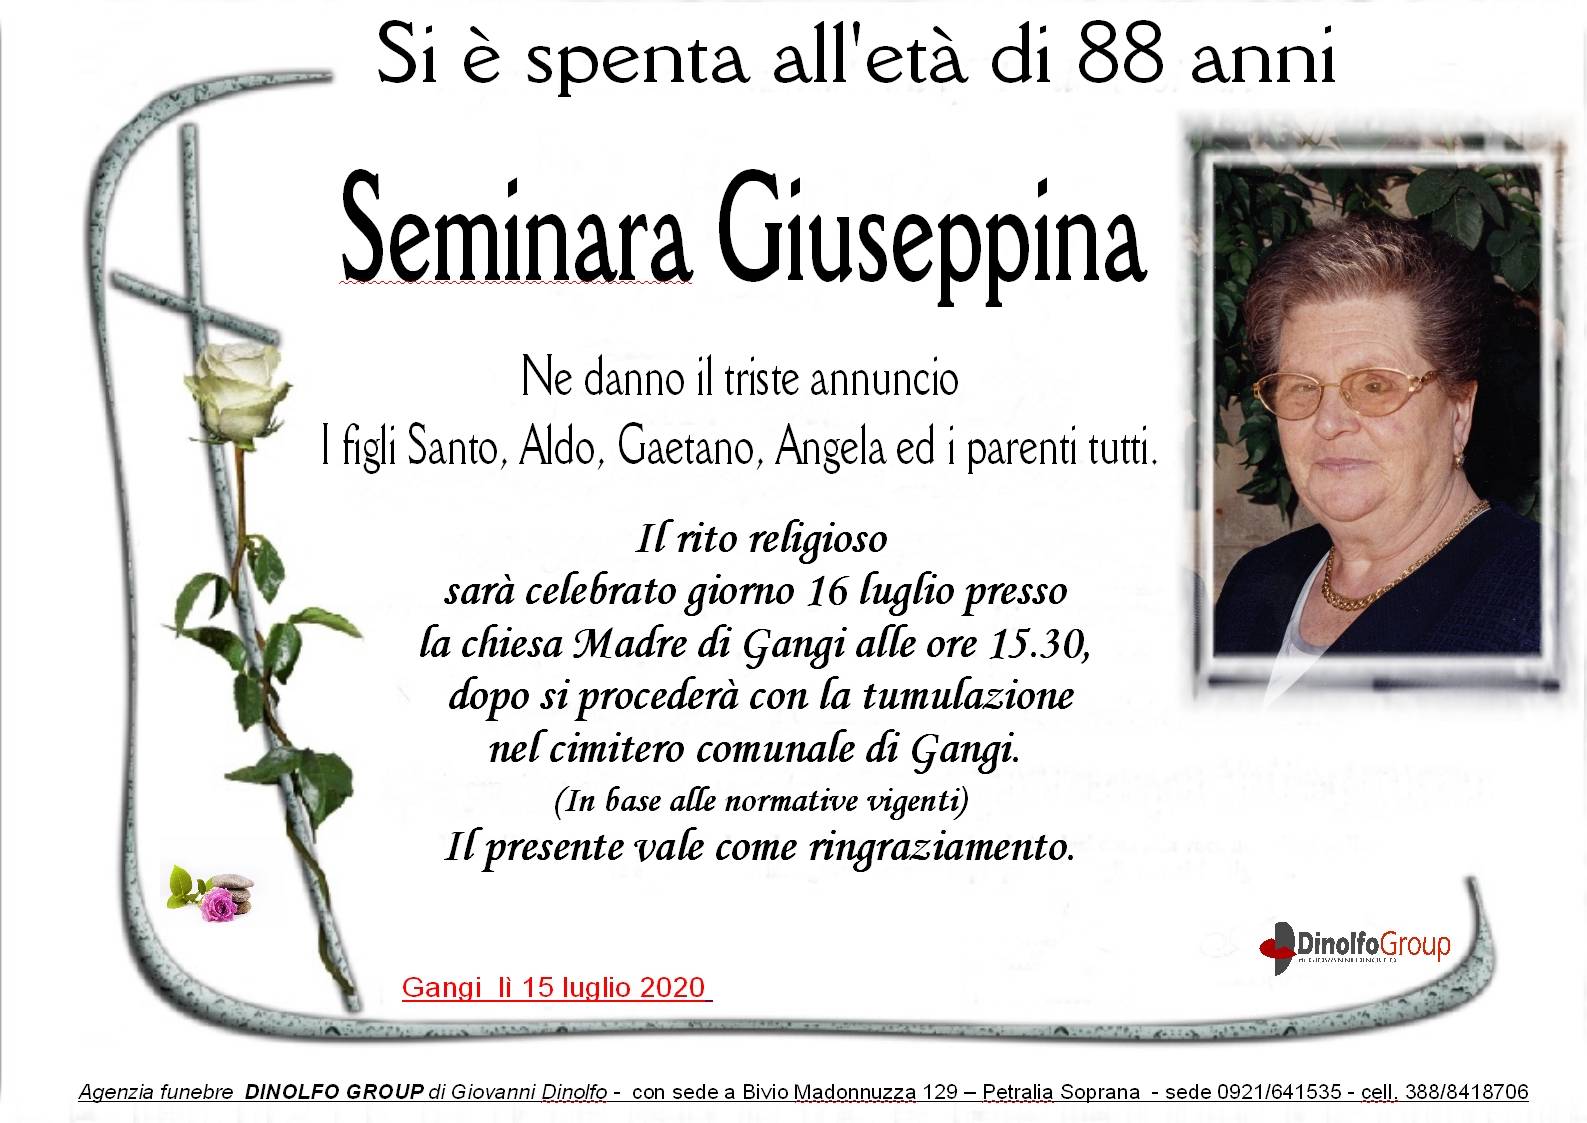 Giuseppina Seminara